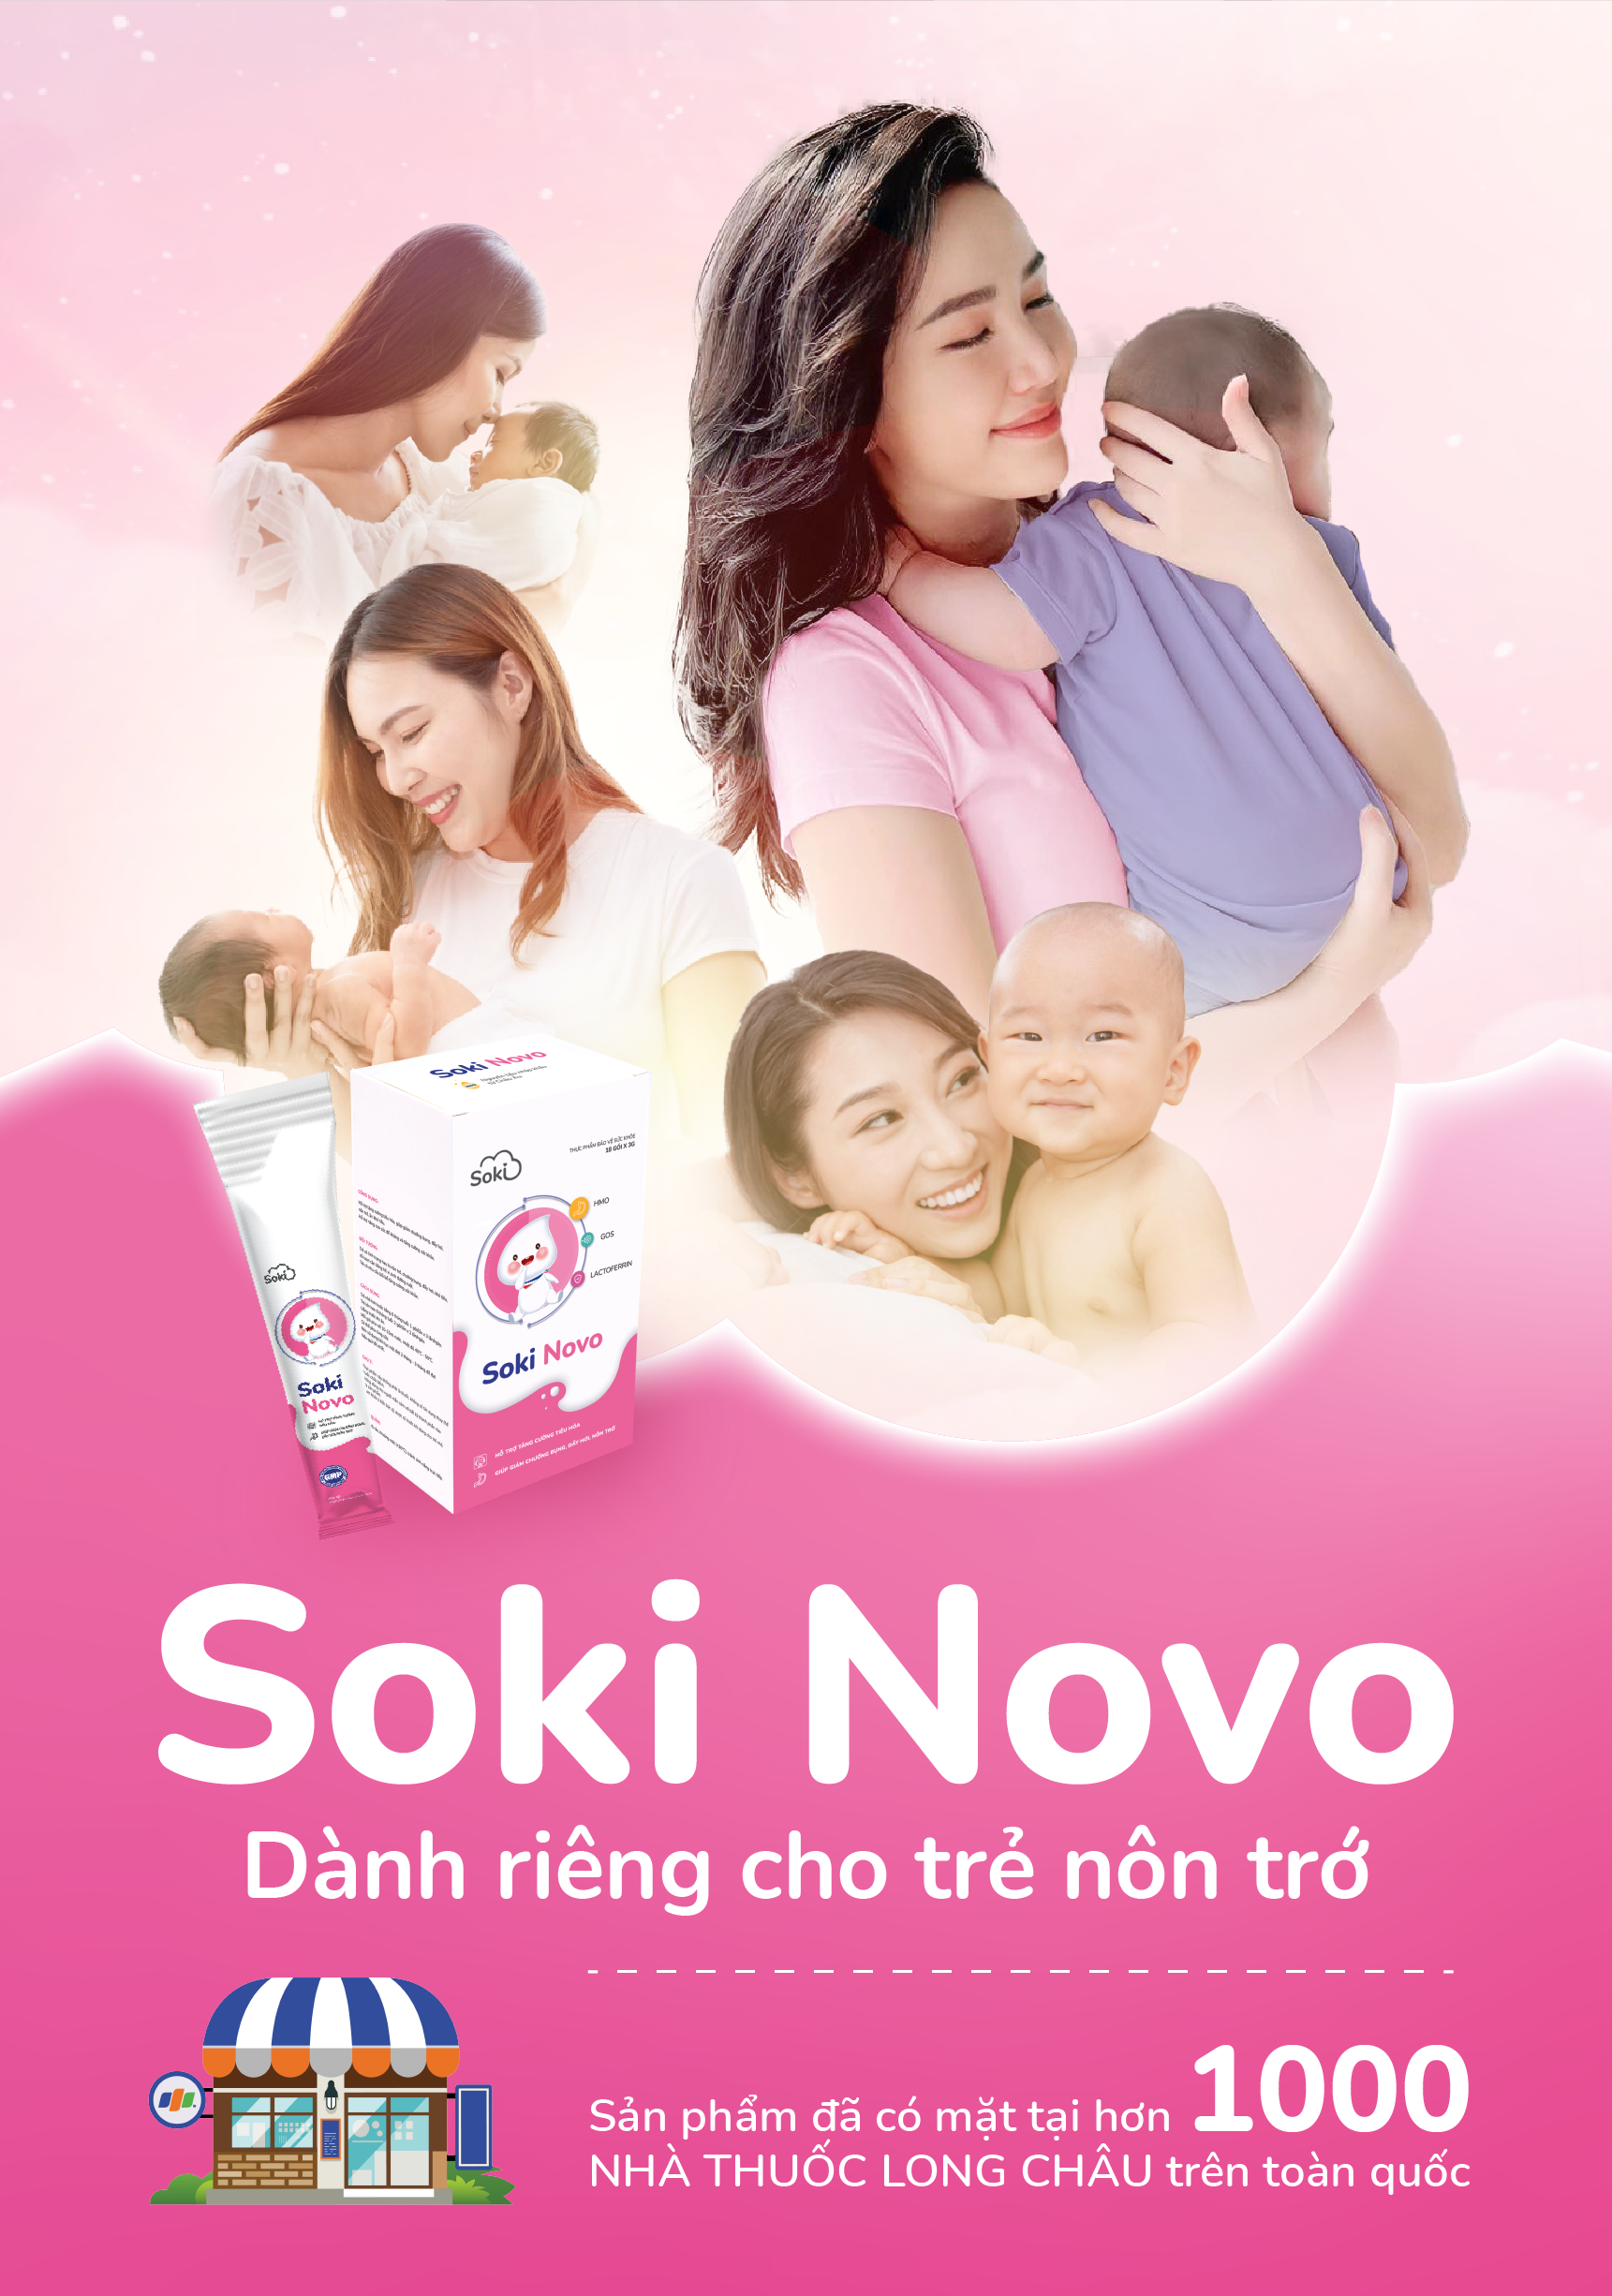 Soki Novo - Dành riêng cho trẻ nôn trớ hiện đã có mặt tại hơn 1000 nhà thuốc Long Châu trên toàn quốc